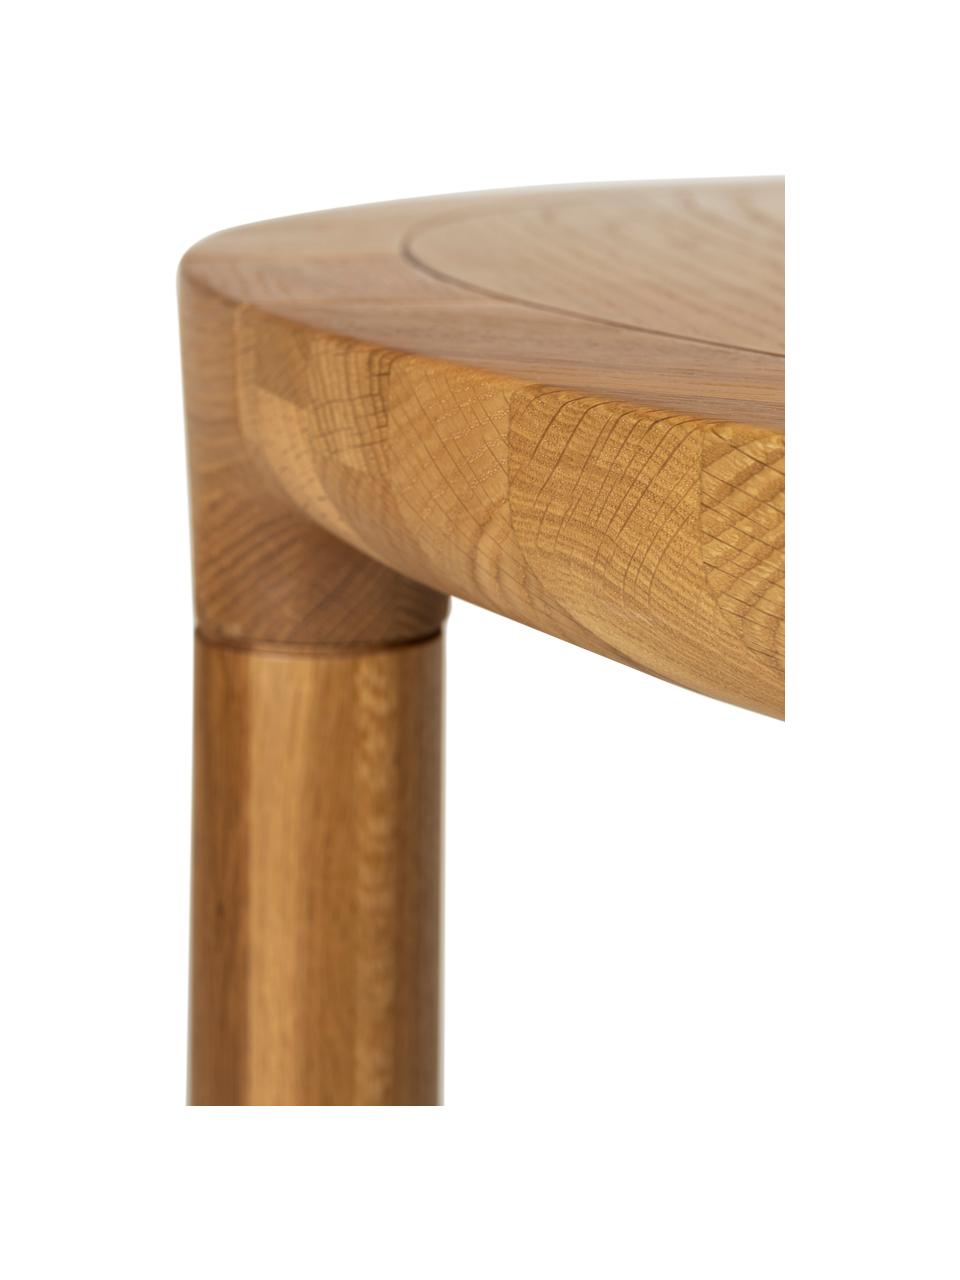 Tavolo rotondo in legno di frassino Storm, Ø 128 cm, Legno di frassino, pannello di fibra a media densità (MDF), Legno di frassino, Ø 128 x Alt. 75 cm